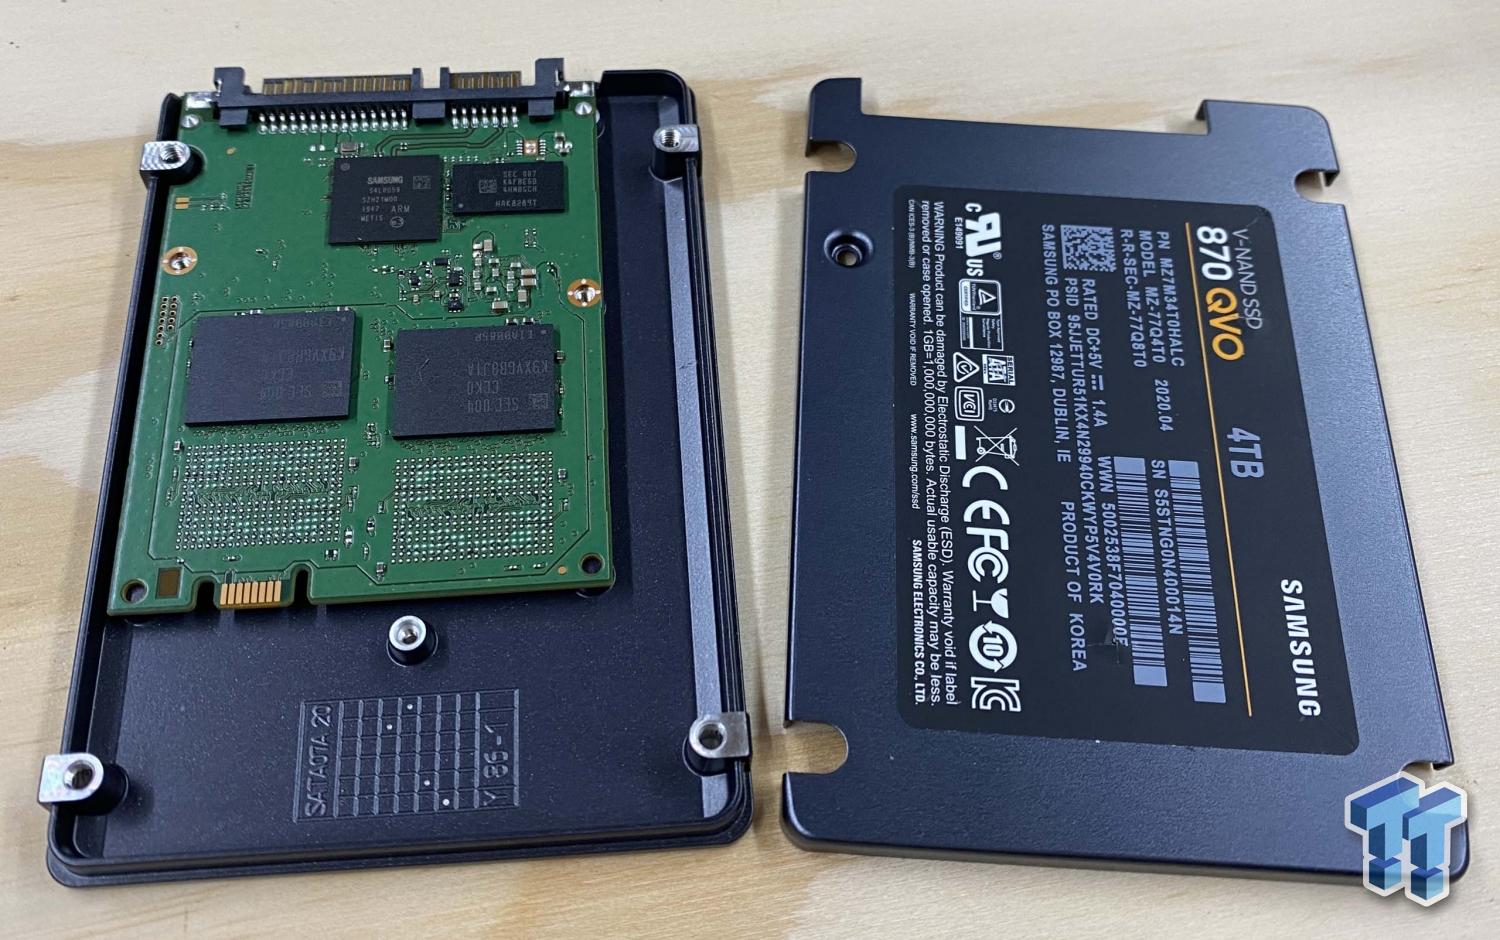 Samsung 870 QVO 4TB V-NAND SATA SSD Review